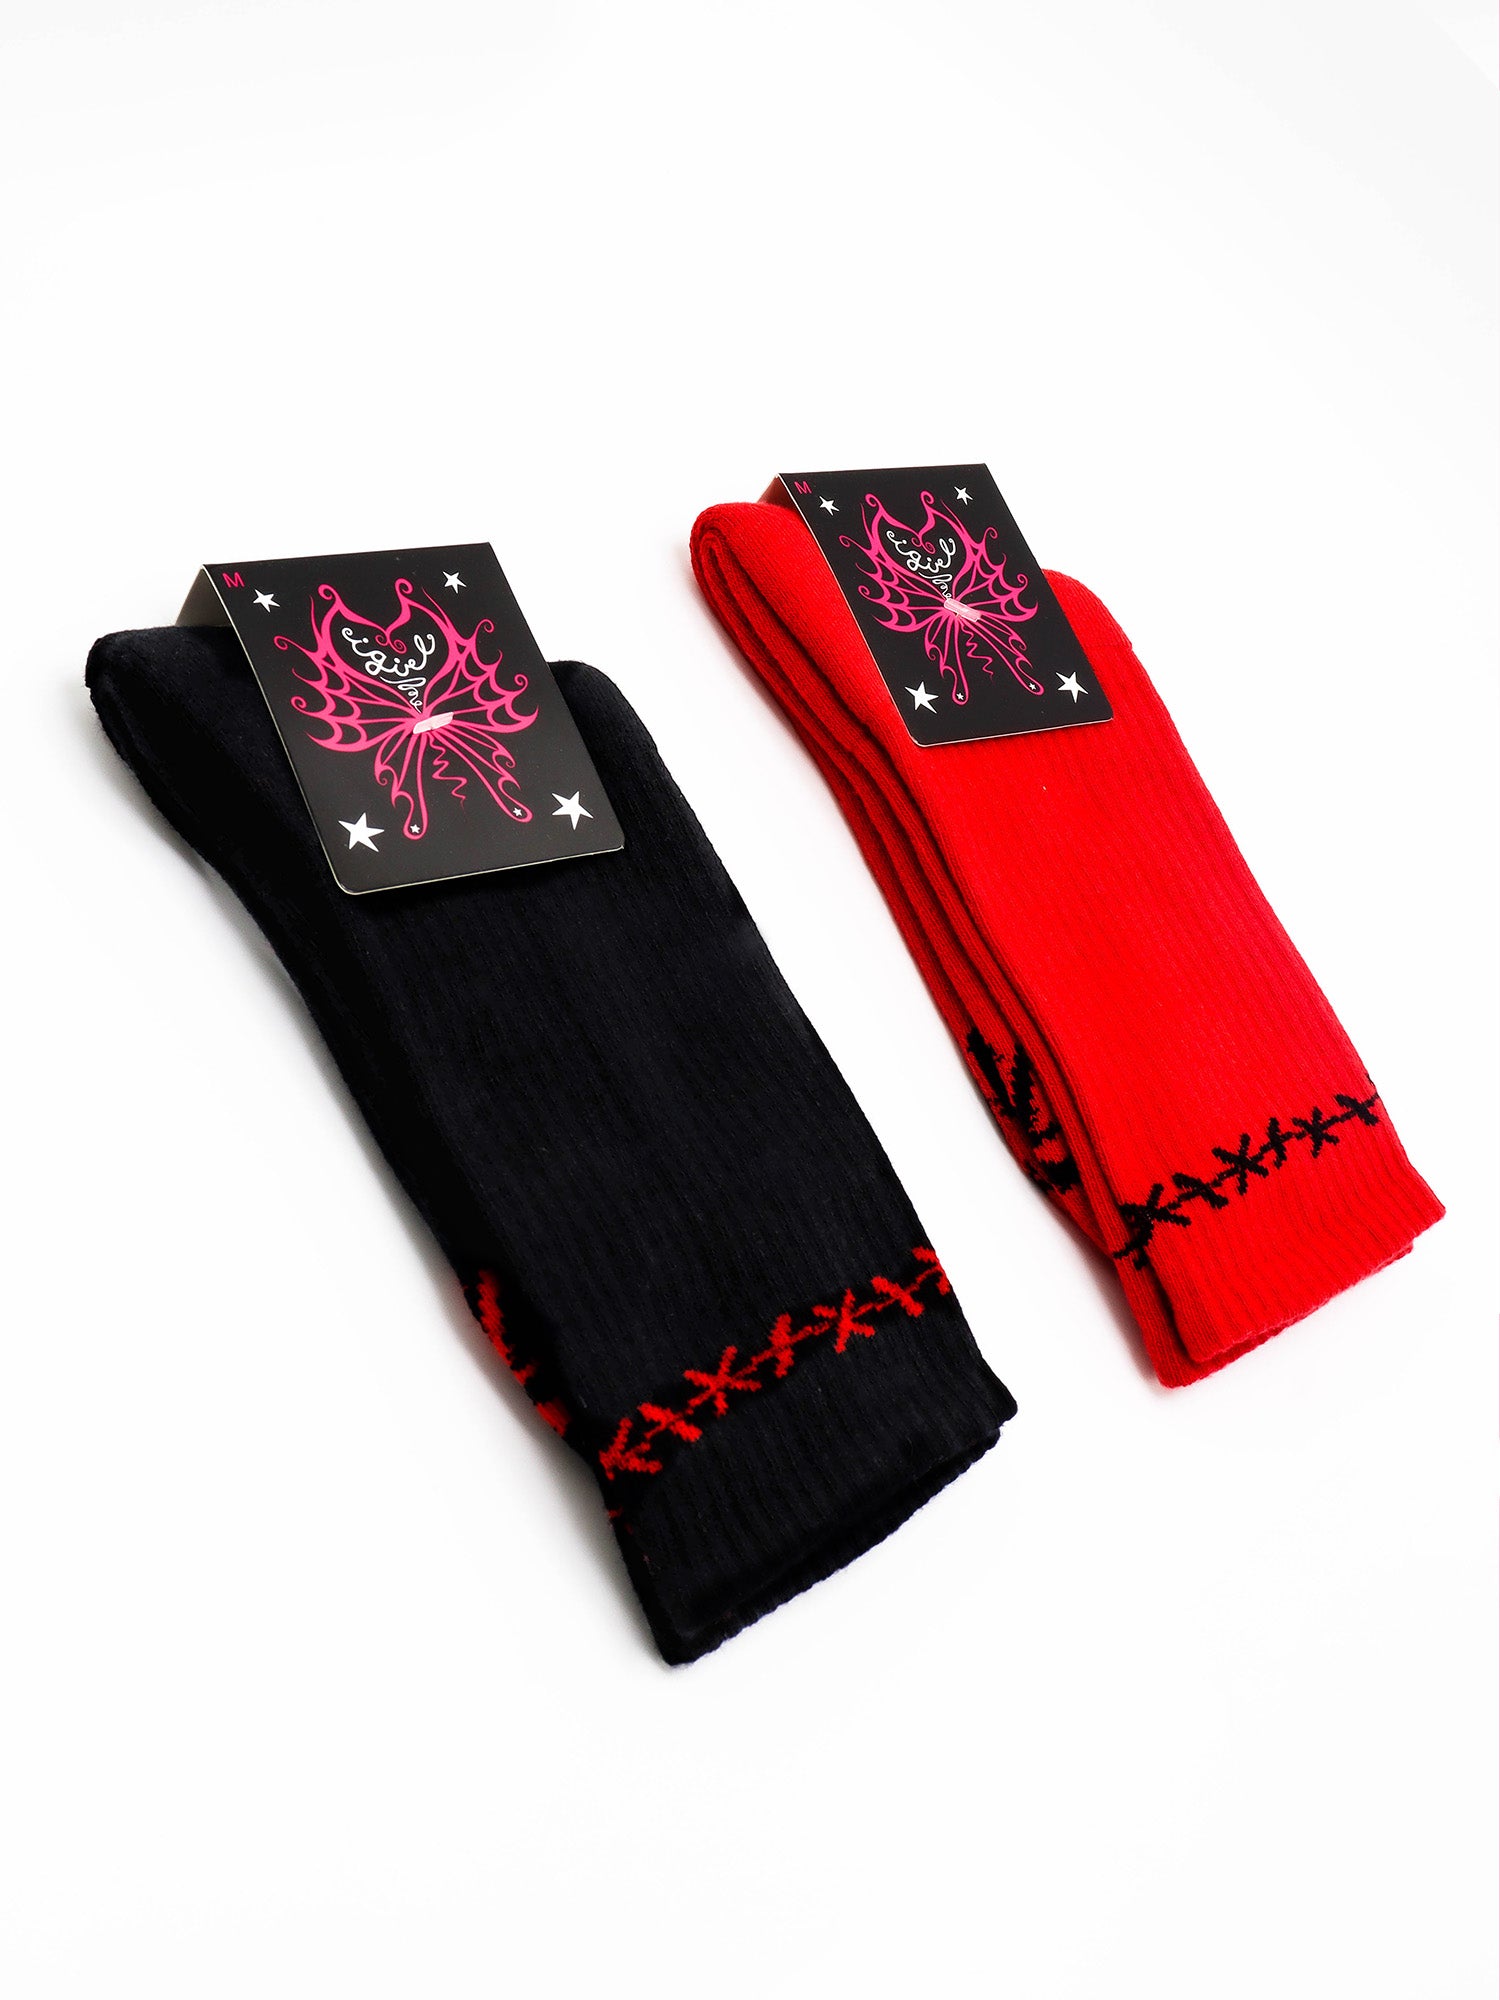 Split Socks